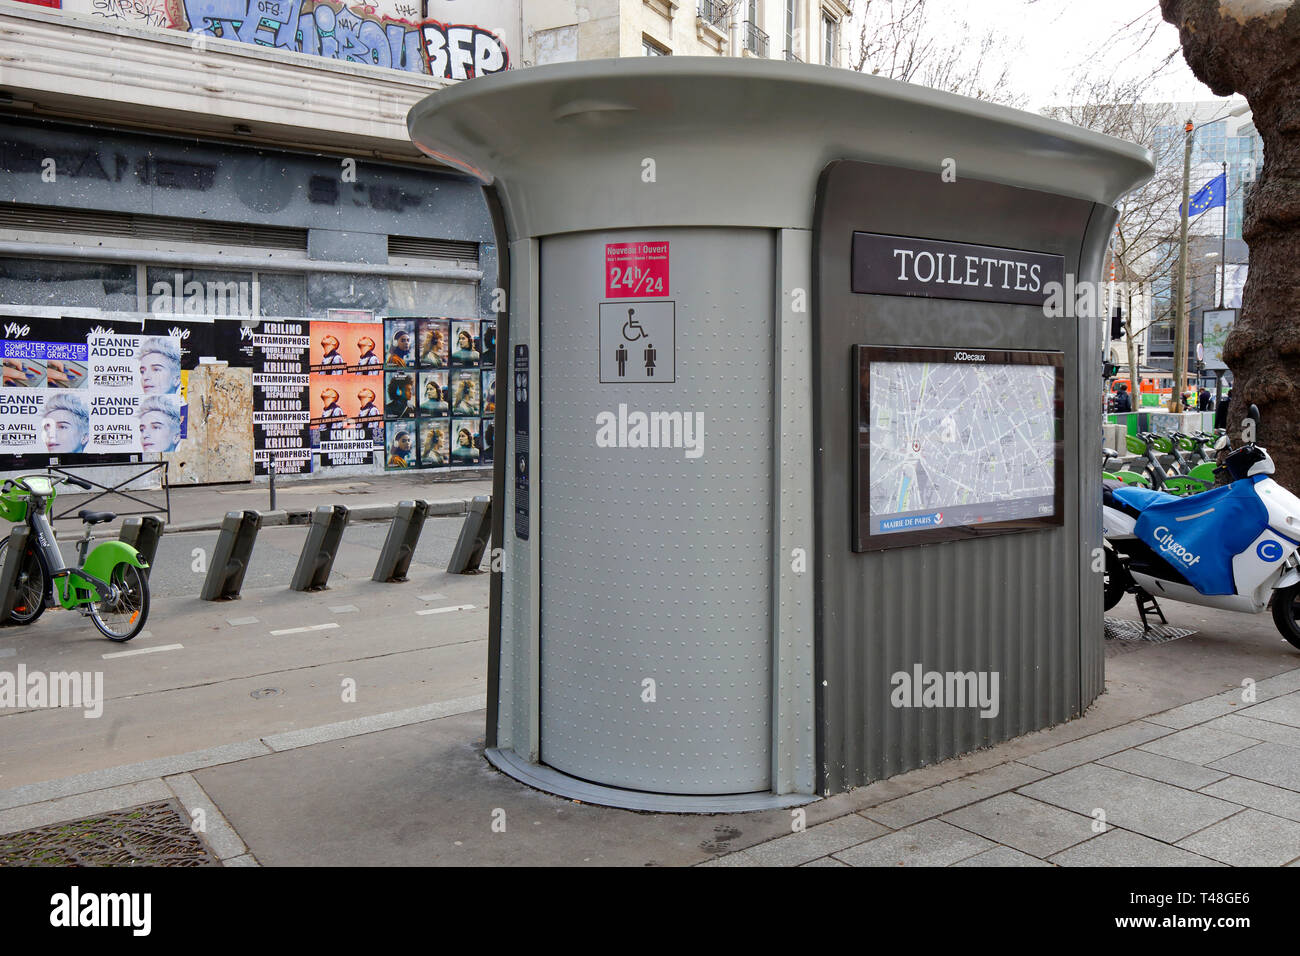 A Sanisette automatico autopulente servizi igienici pubblici, servizi igienici pubblici, vicino a Place de la Bastille, Parigi, Francia. I servizi sono gratuiti. Foto Stock